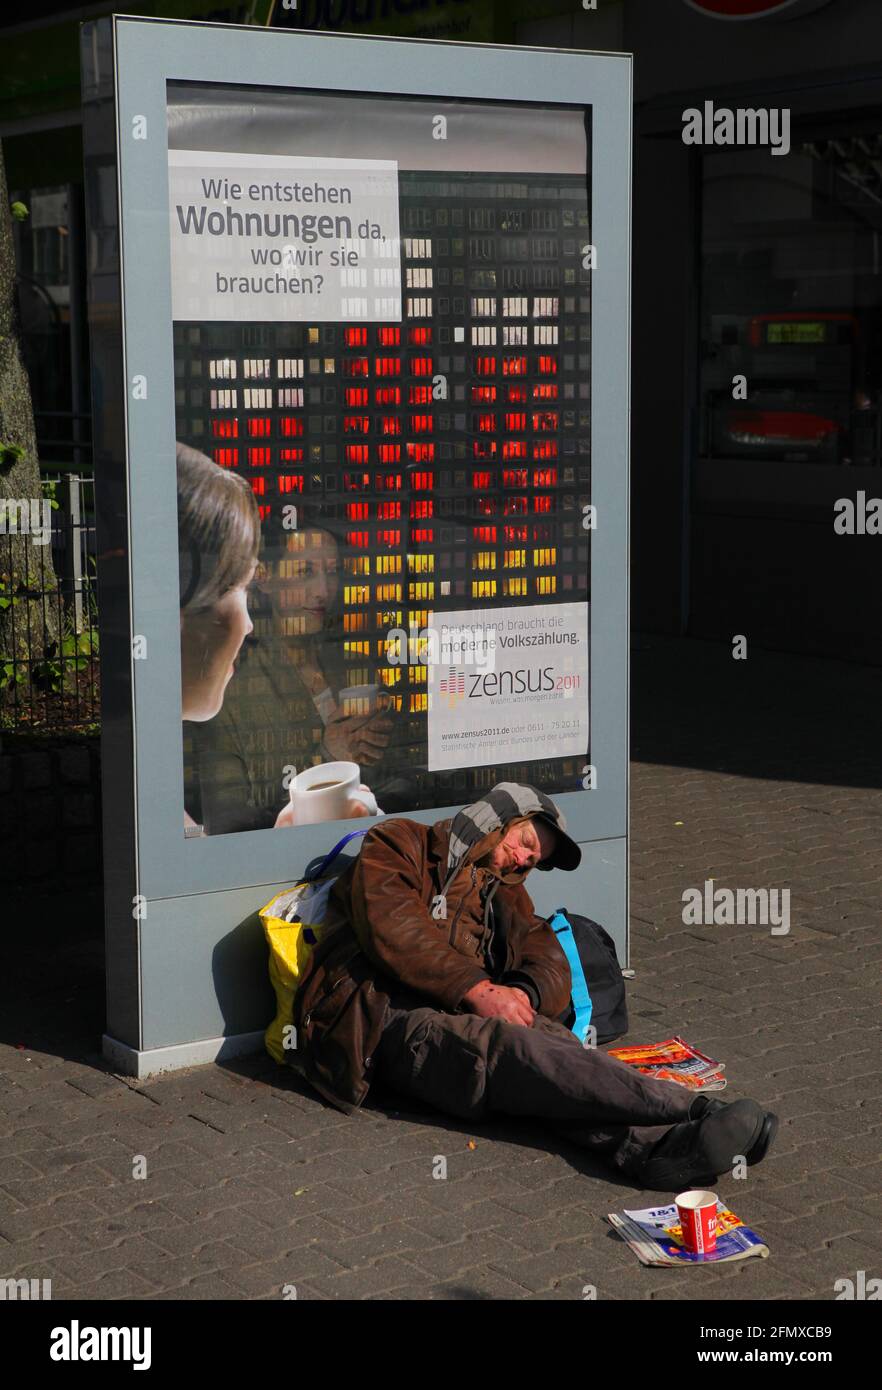 Genau vor einem Werbeplakat für die Volkszaehlung 2011 Zensus liegt ein Obdachloser nahe des Hauptbahnhofs in Duesseldorf. Das Plakat wirbt für die Vo Stock Photo